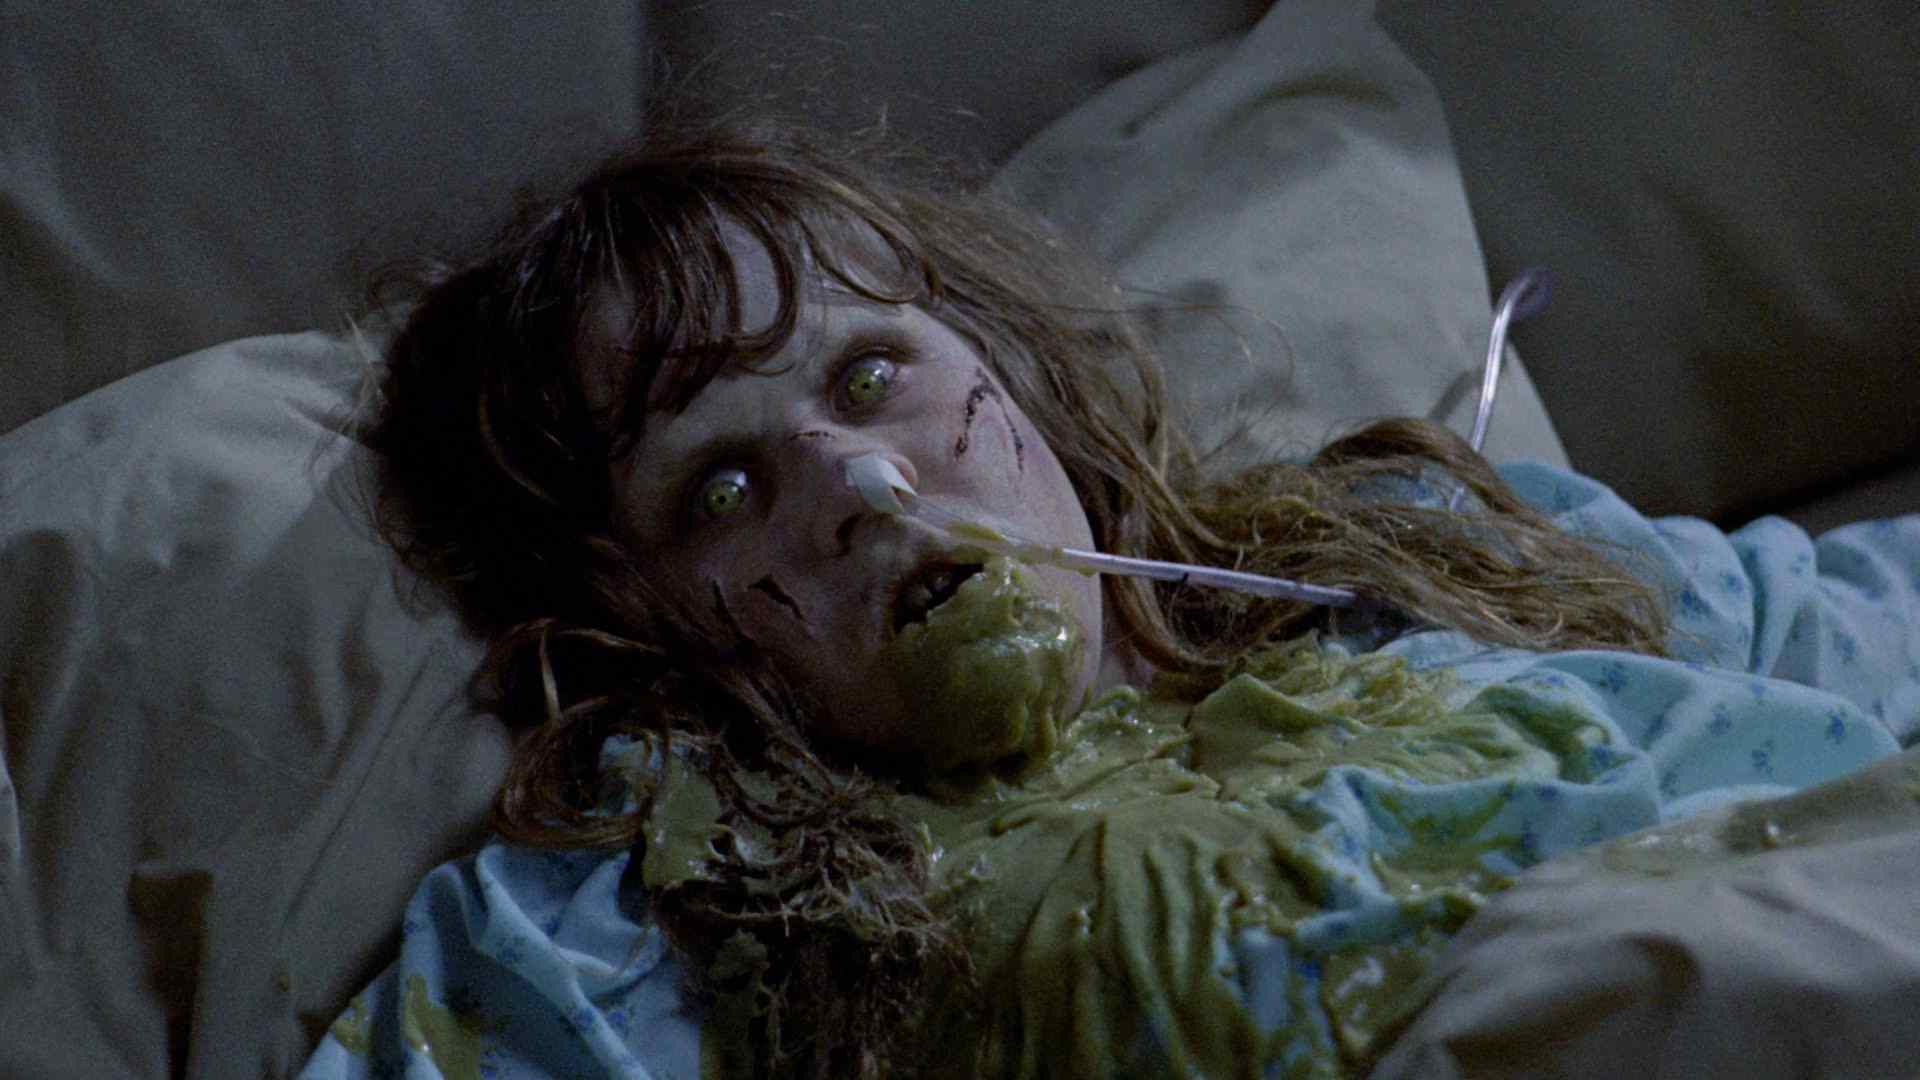 El exorcista es una de las películas más aclamadas en el género del terror (Foto: Morgan Creek Entertainment)
